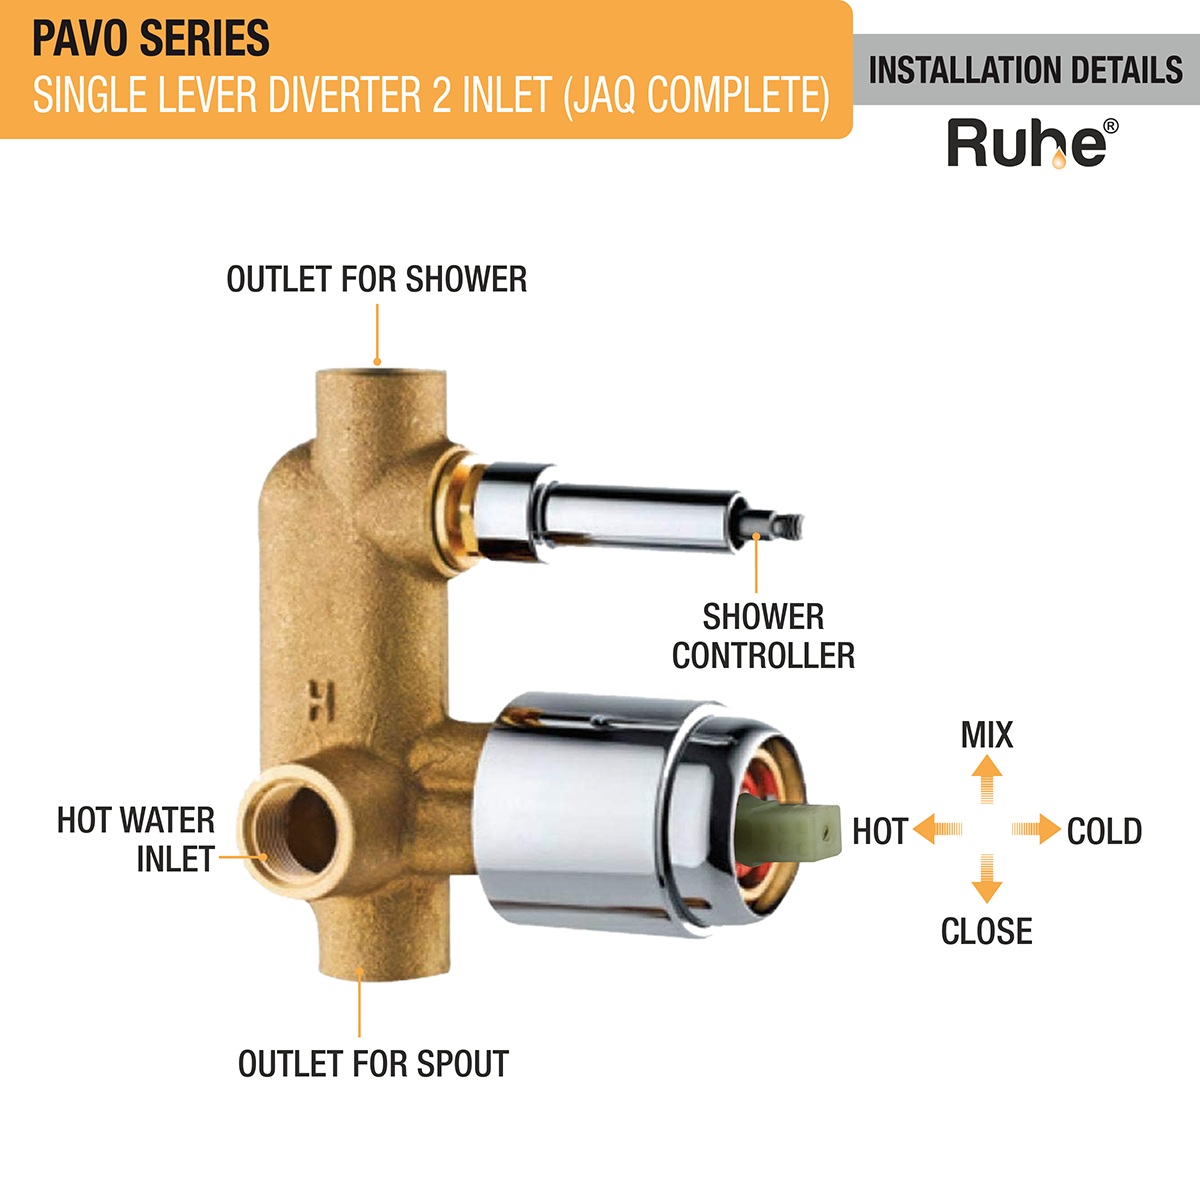 Pavo Single Lever 2-inlet Diverter (JAQ Complete Set) installation details